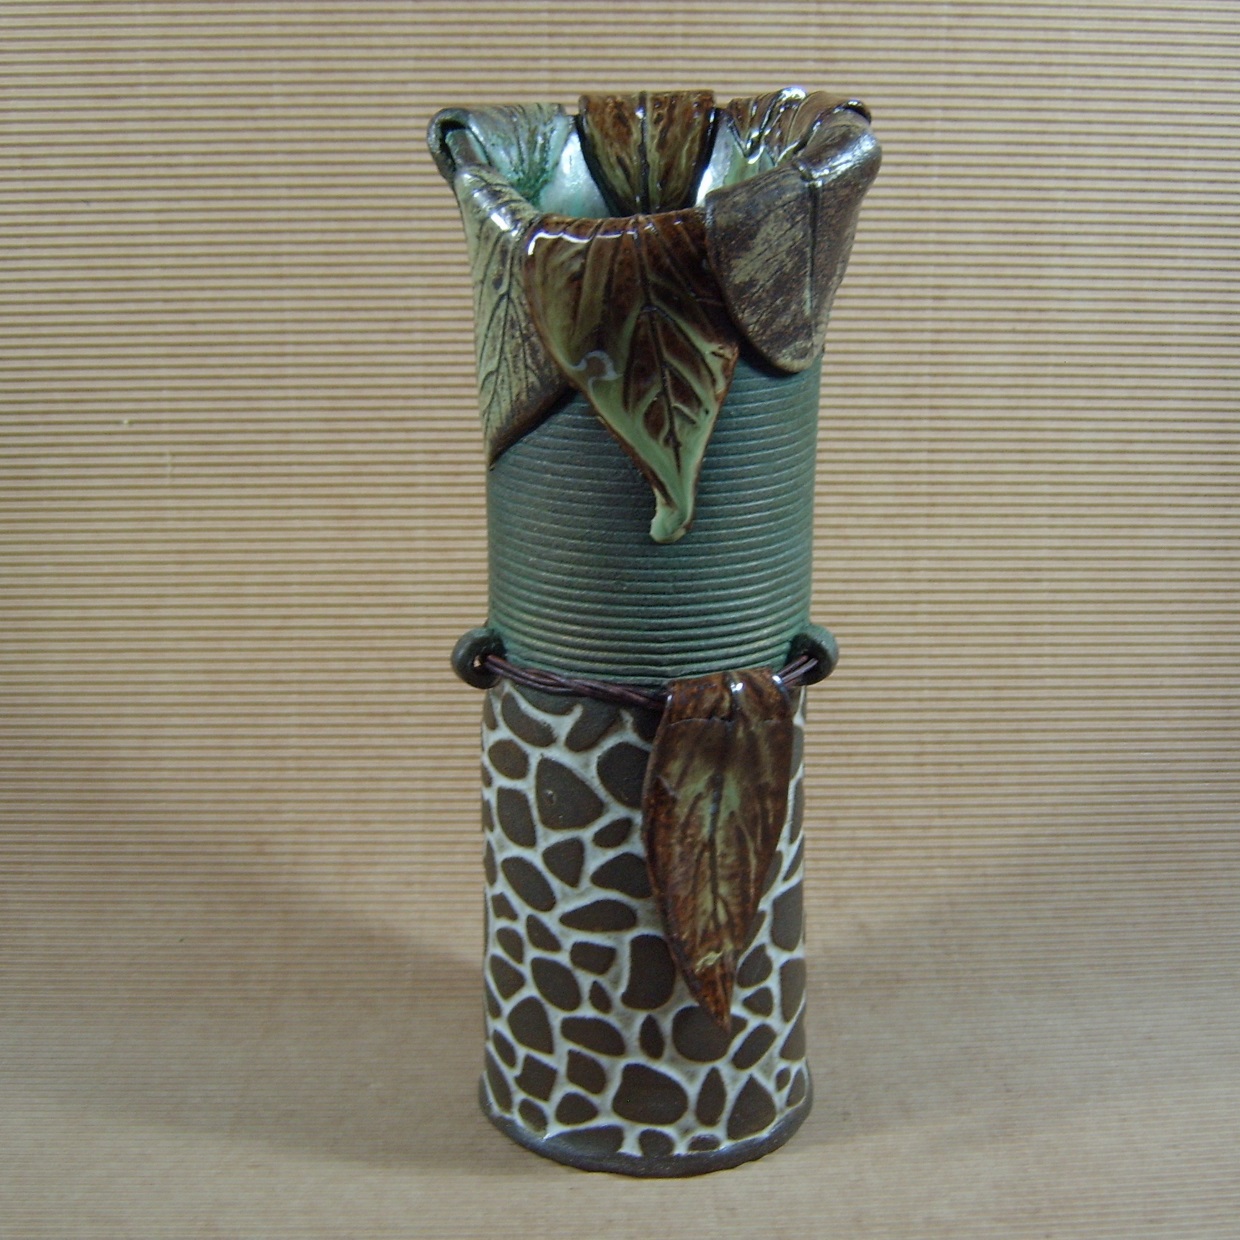 Linda Selwood's Pebble Vase